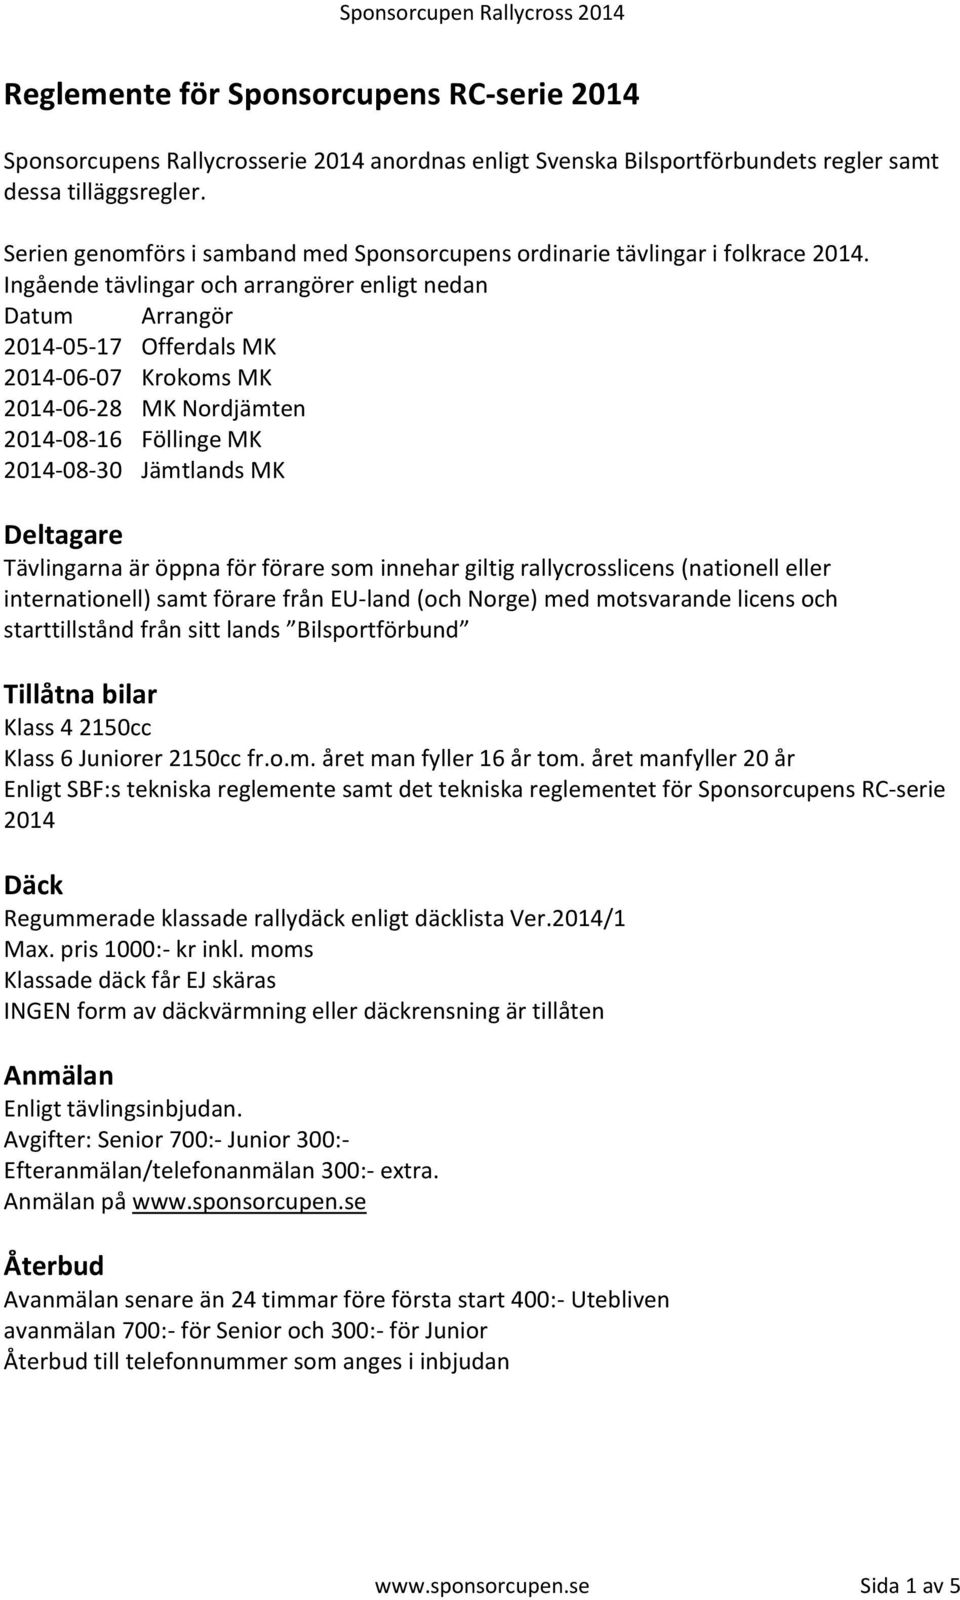 Ingående tävlingar och arrangörer enligt nedan Datum Arrangör 2014-05-17 Offerdals MK 2014-06-07 Krokoms MK 2014-06-28 MK Nordjämten 2014-08-16 Föllinge MK 2014-08-30 Jämtlands MK Deltagare